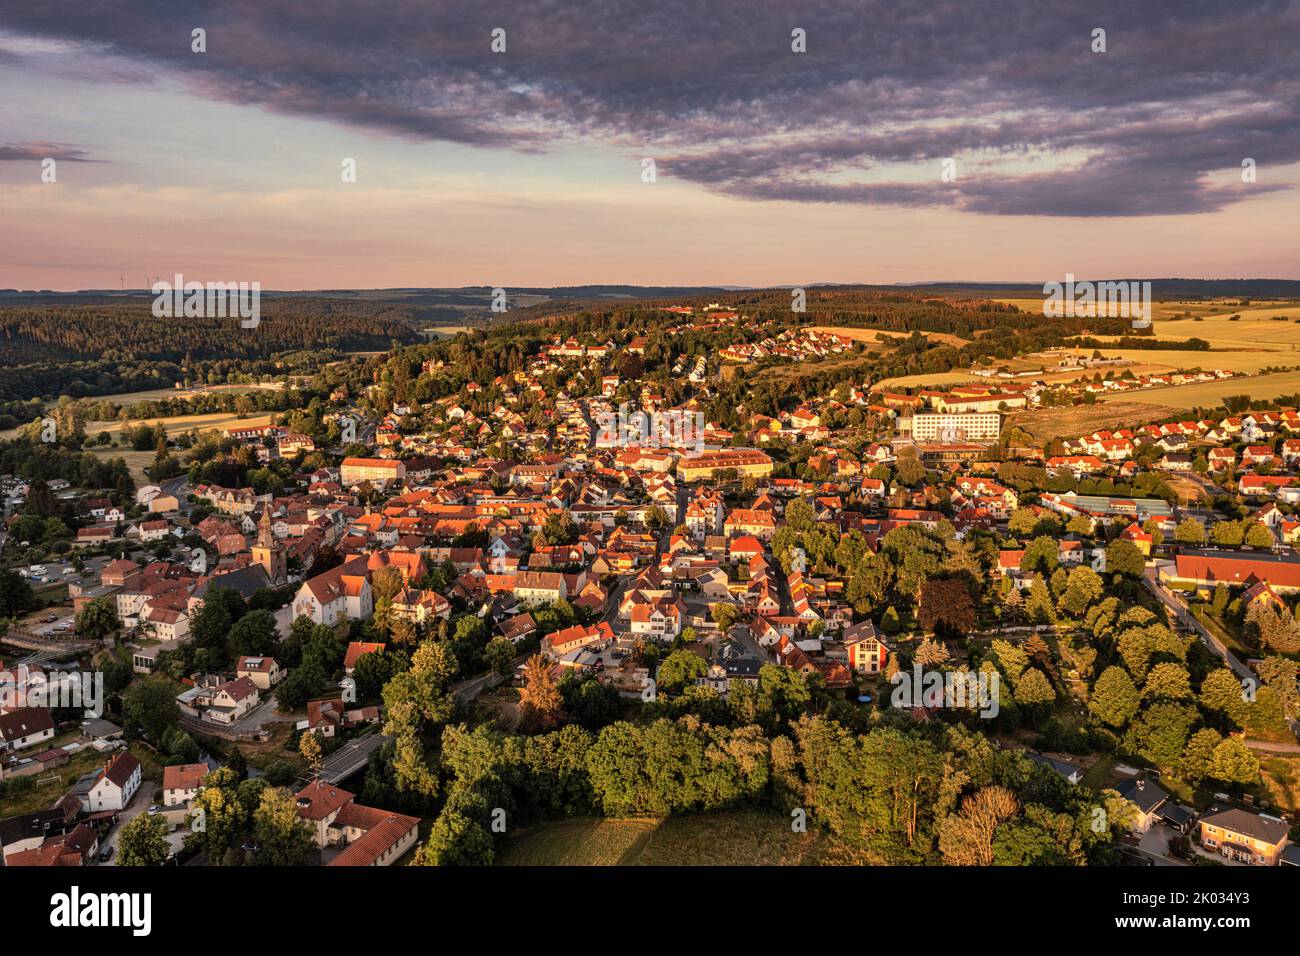 Germania, Turingia, Bad Berka, città, panoramica, luce del mattino, foto aerea Foto Stock